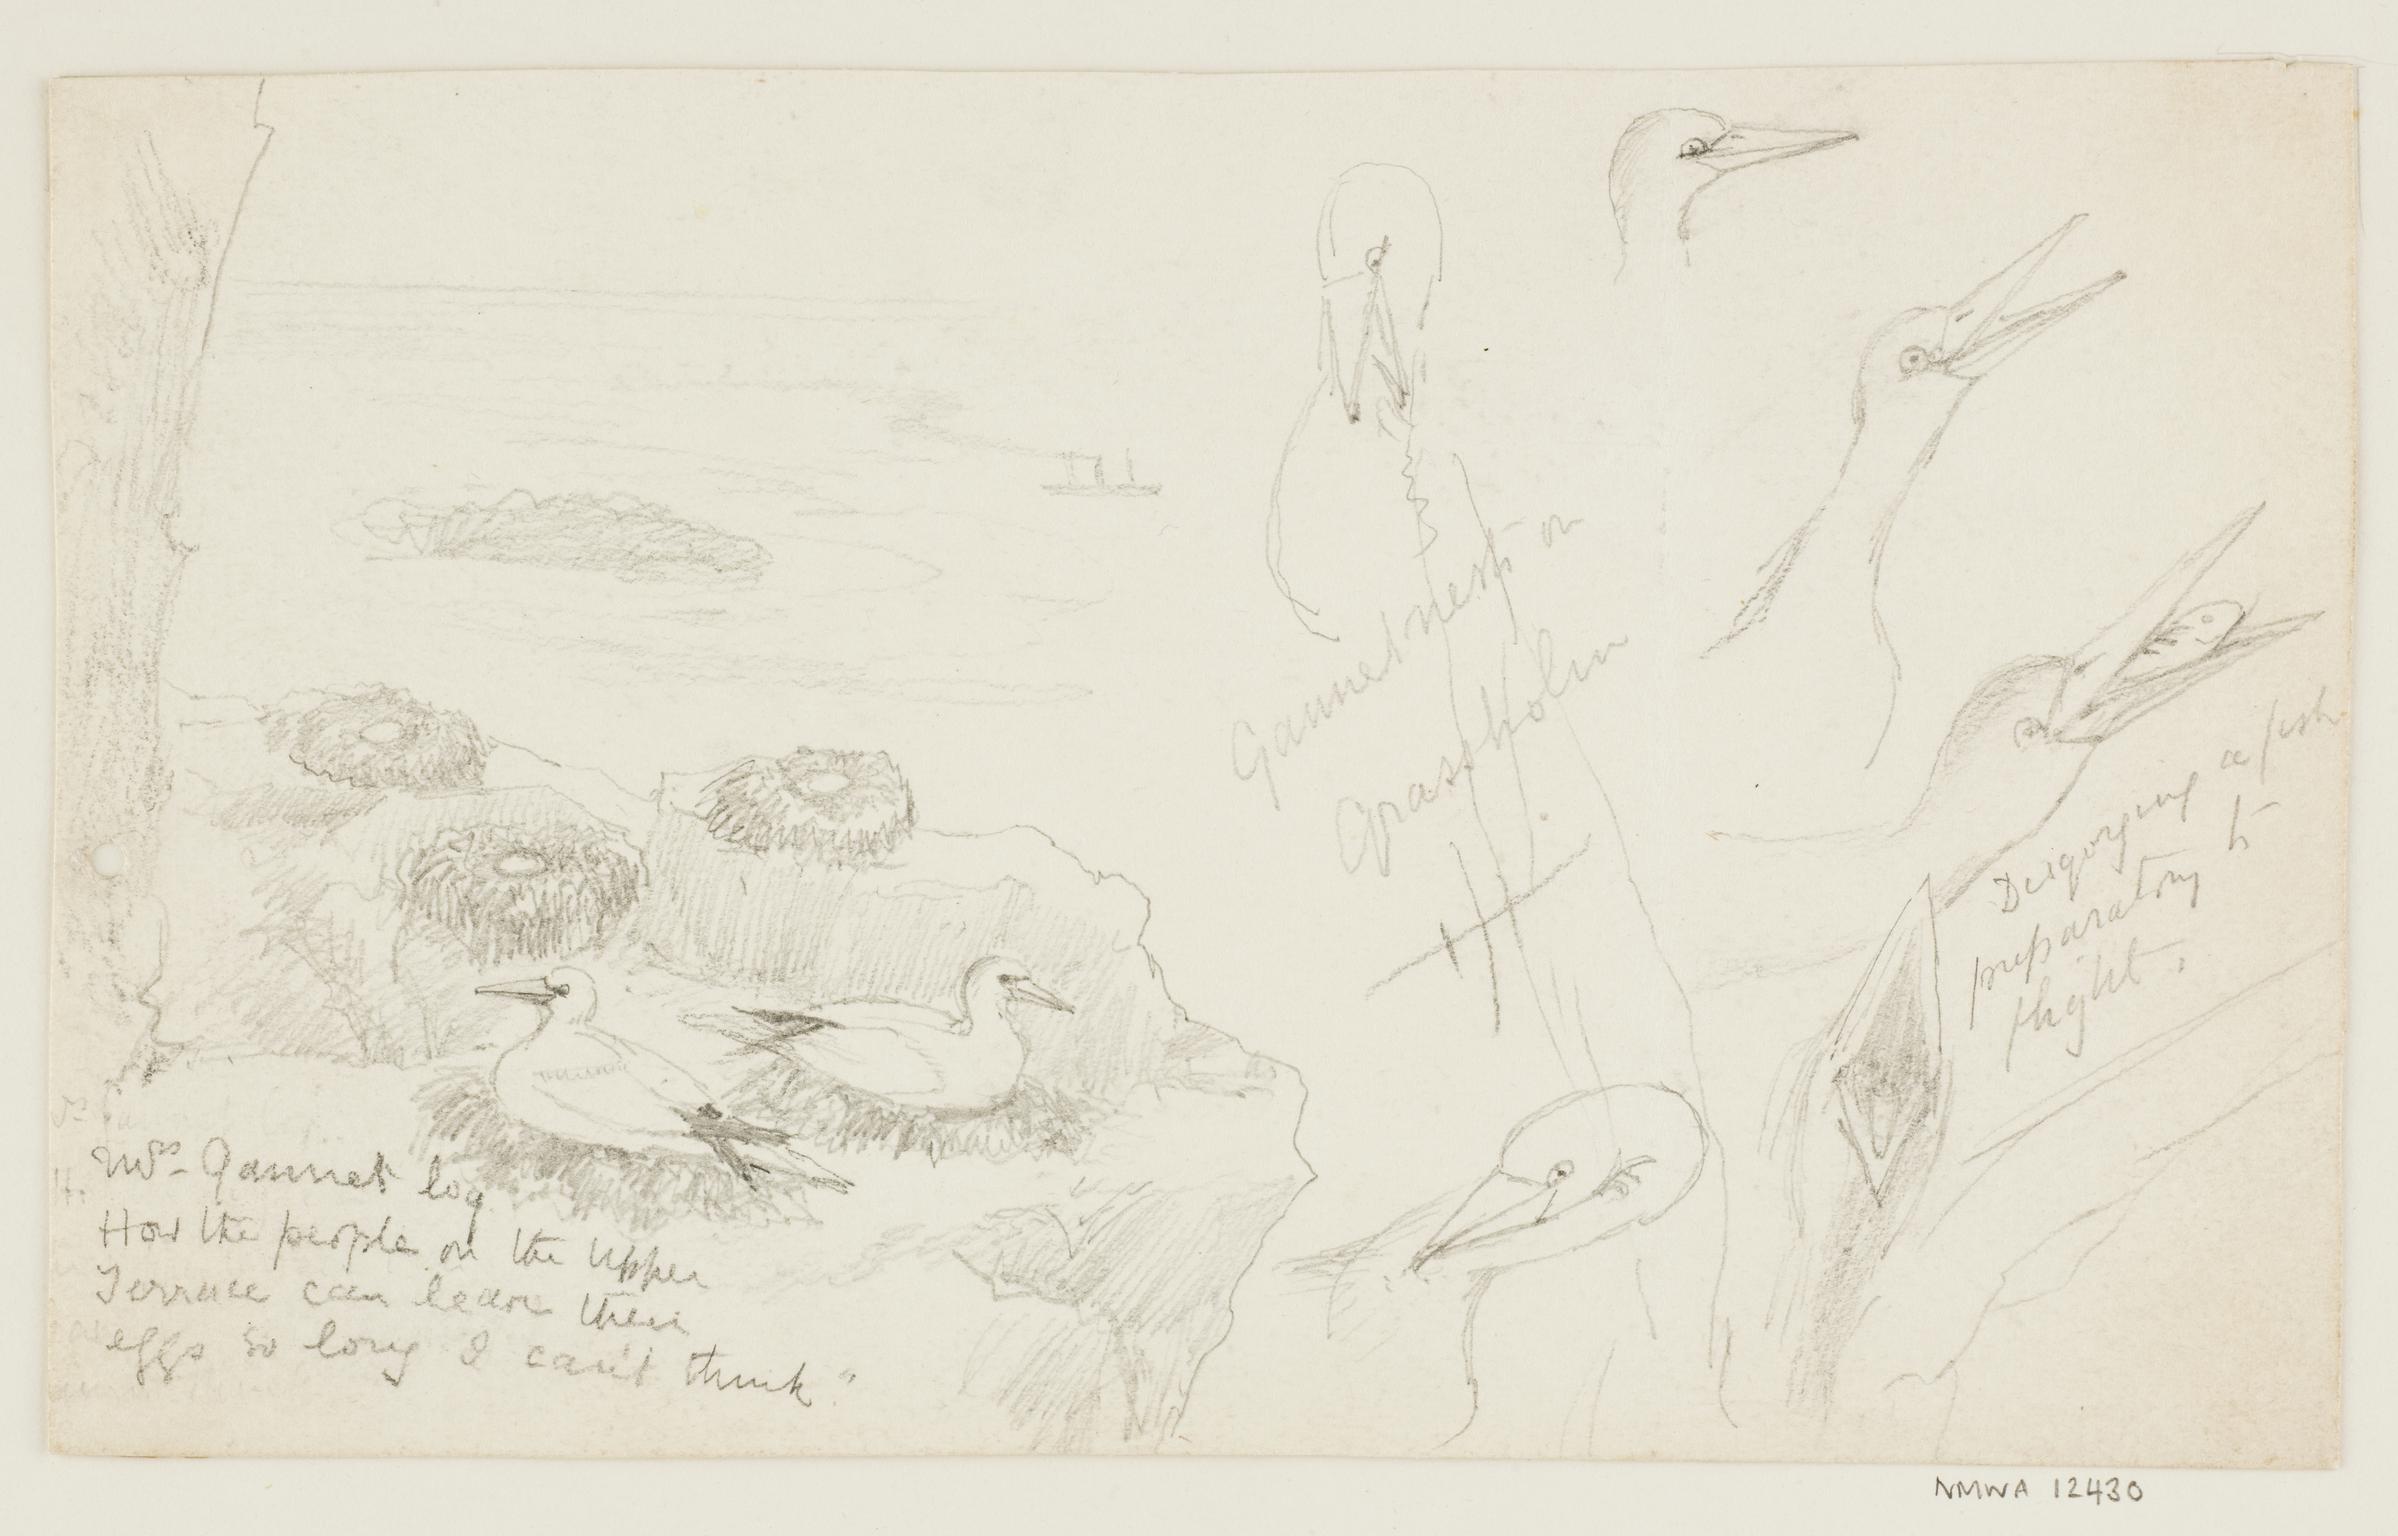 Gannets Nests, Grassholm (sketches)